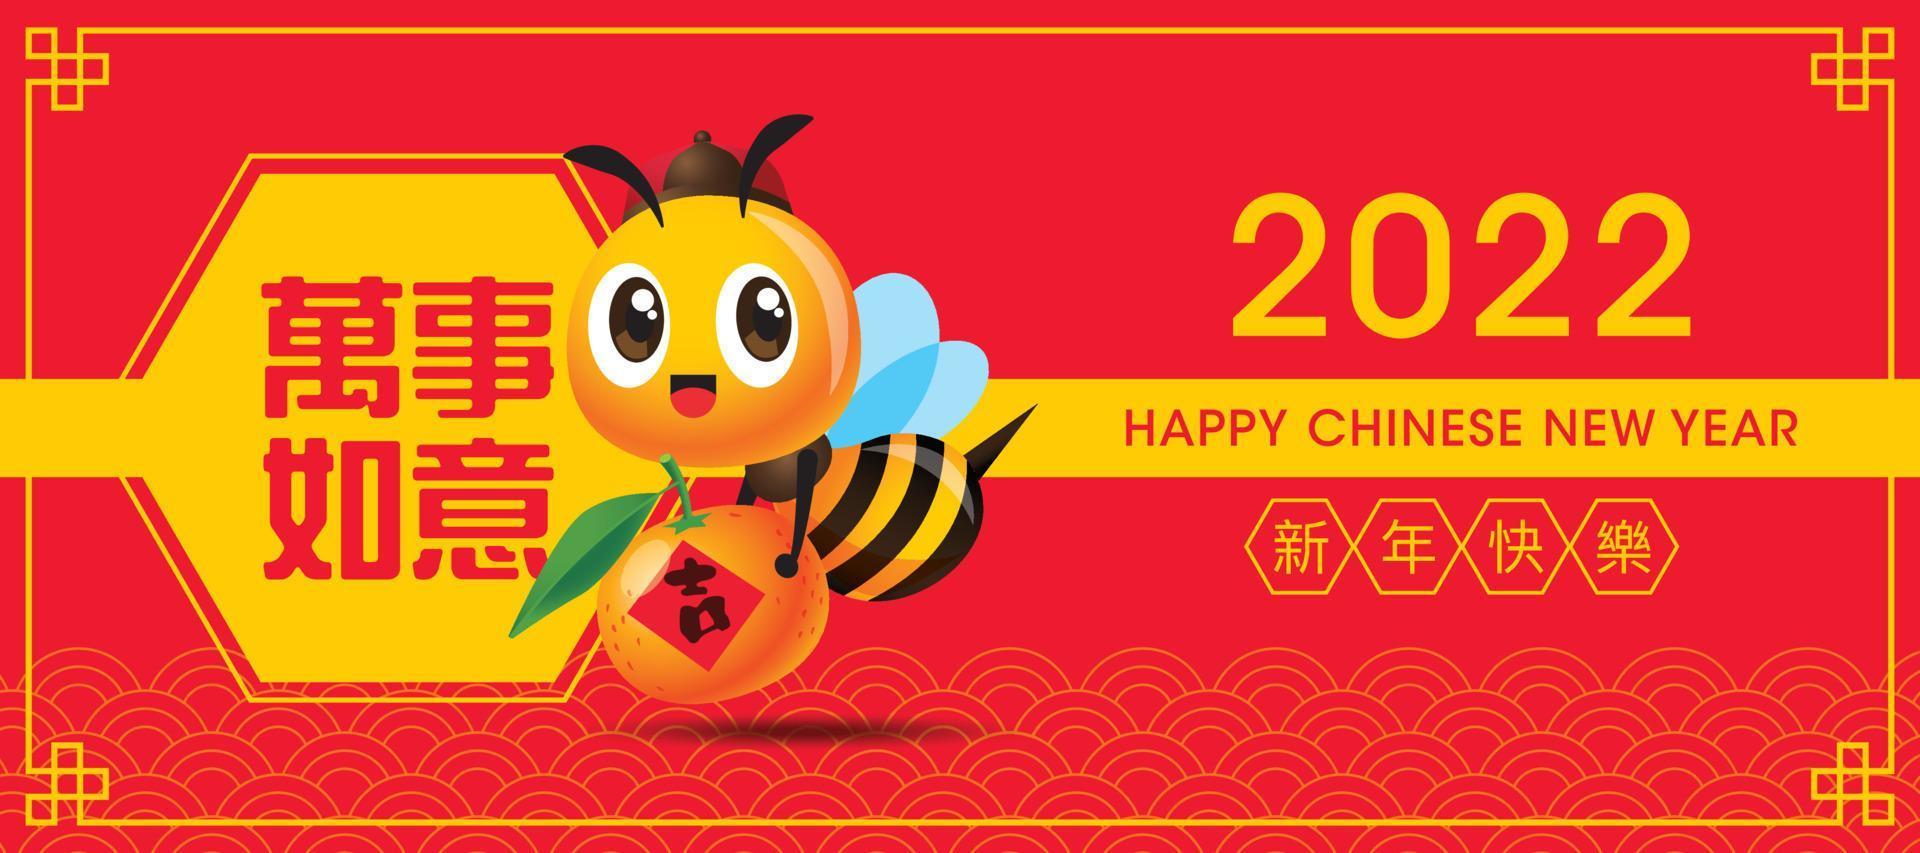 feliz año nuevo chino 2022 banner. abeja linda de dibujos animados con mandarina con gran pareado de primavera. vector